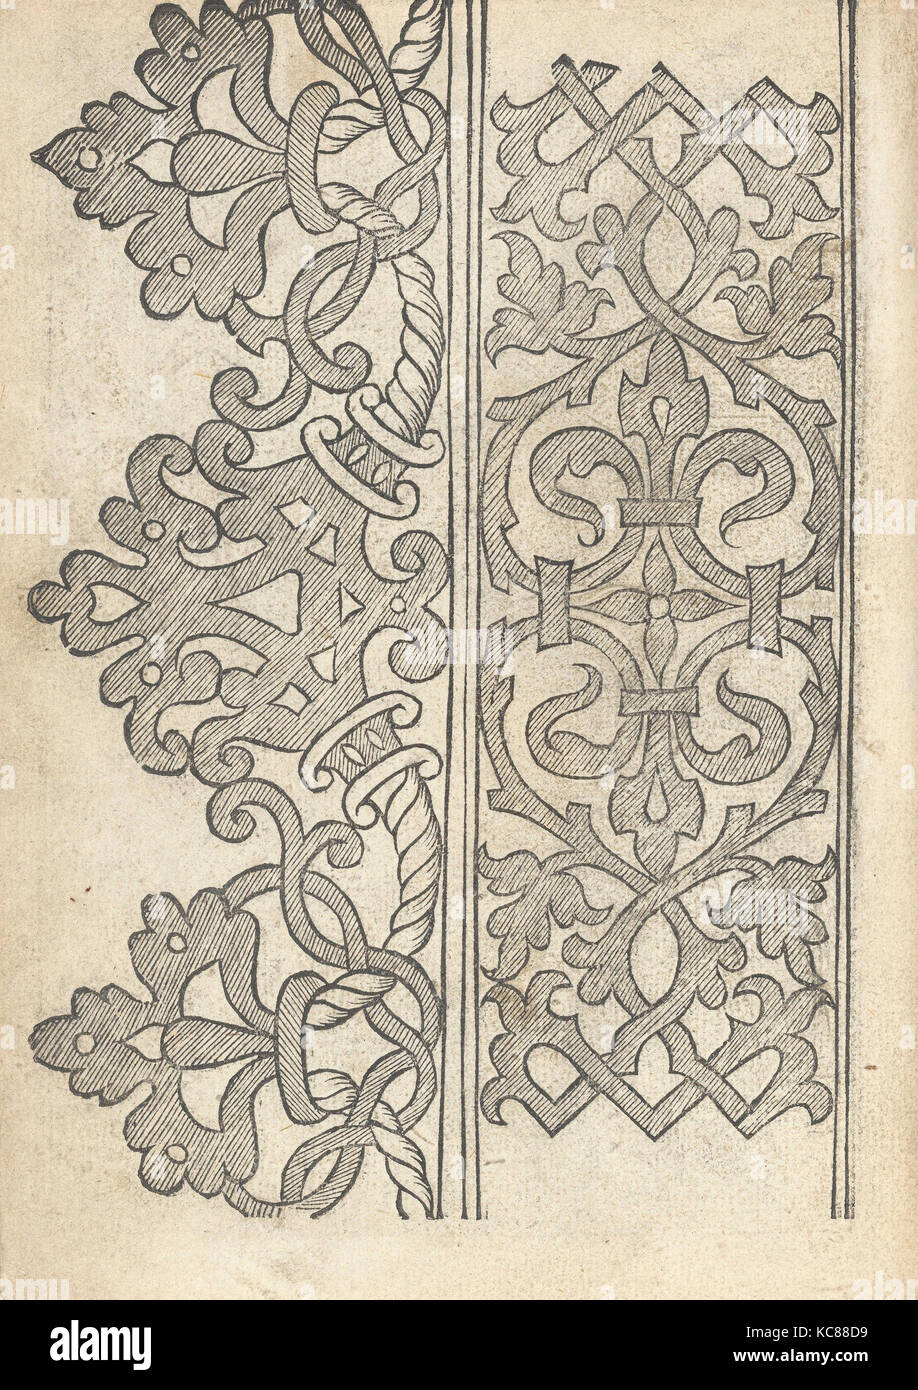 Il Monte. Opera Nova di Recami, page 9 (verso), after 1557 Stock Photo